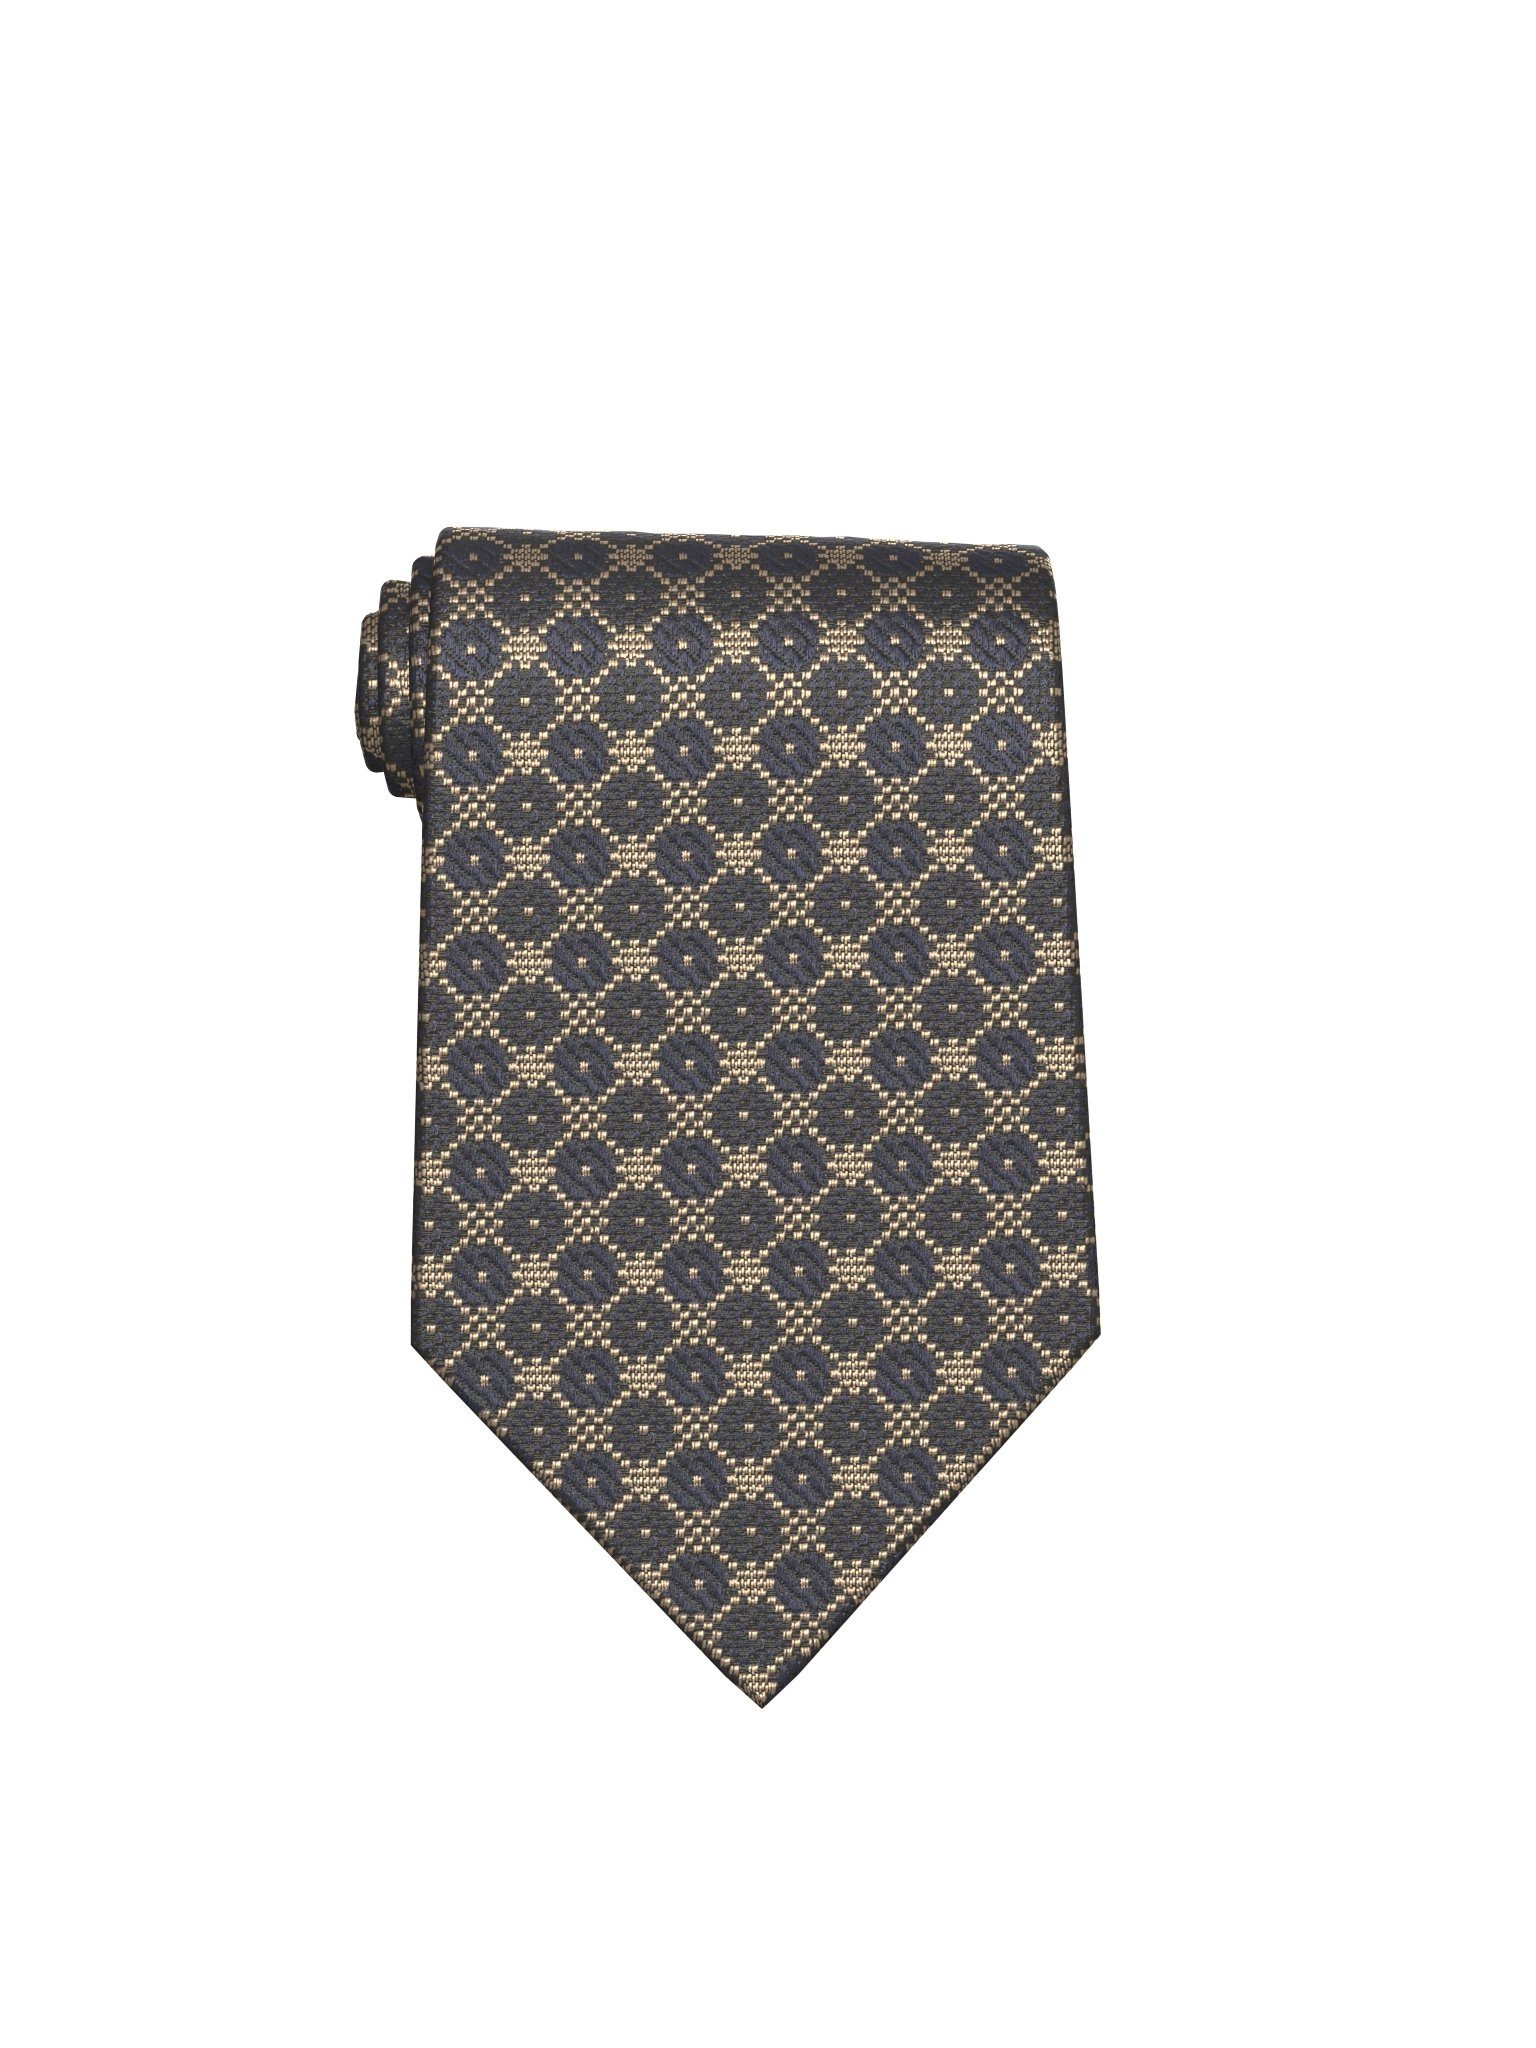 JOOP! für Krawatten | Herren kaufen online OTTO